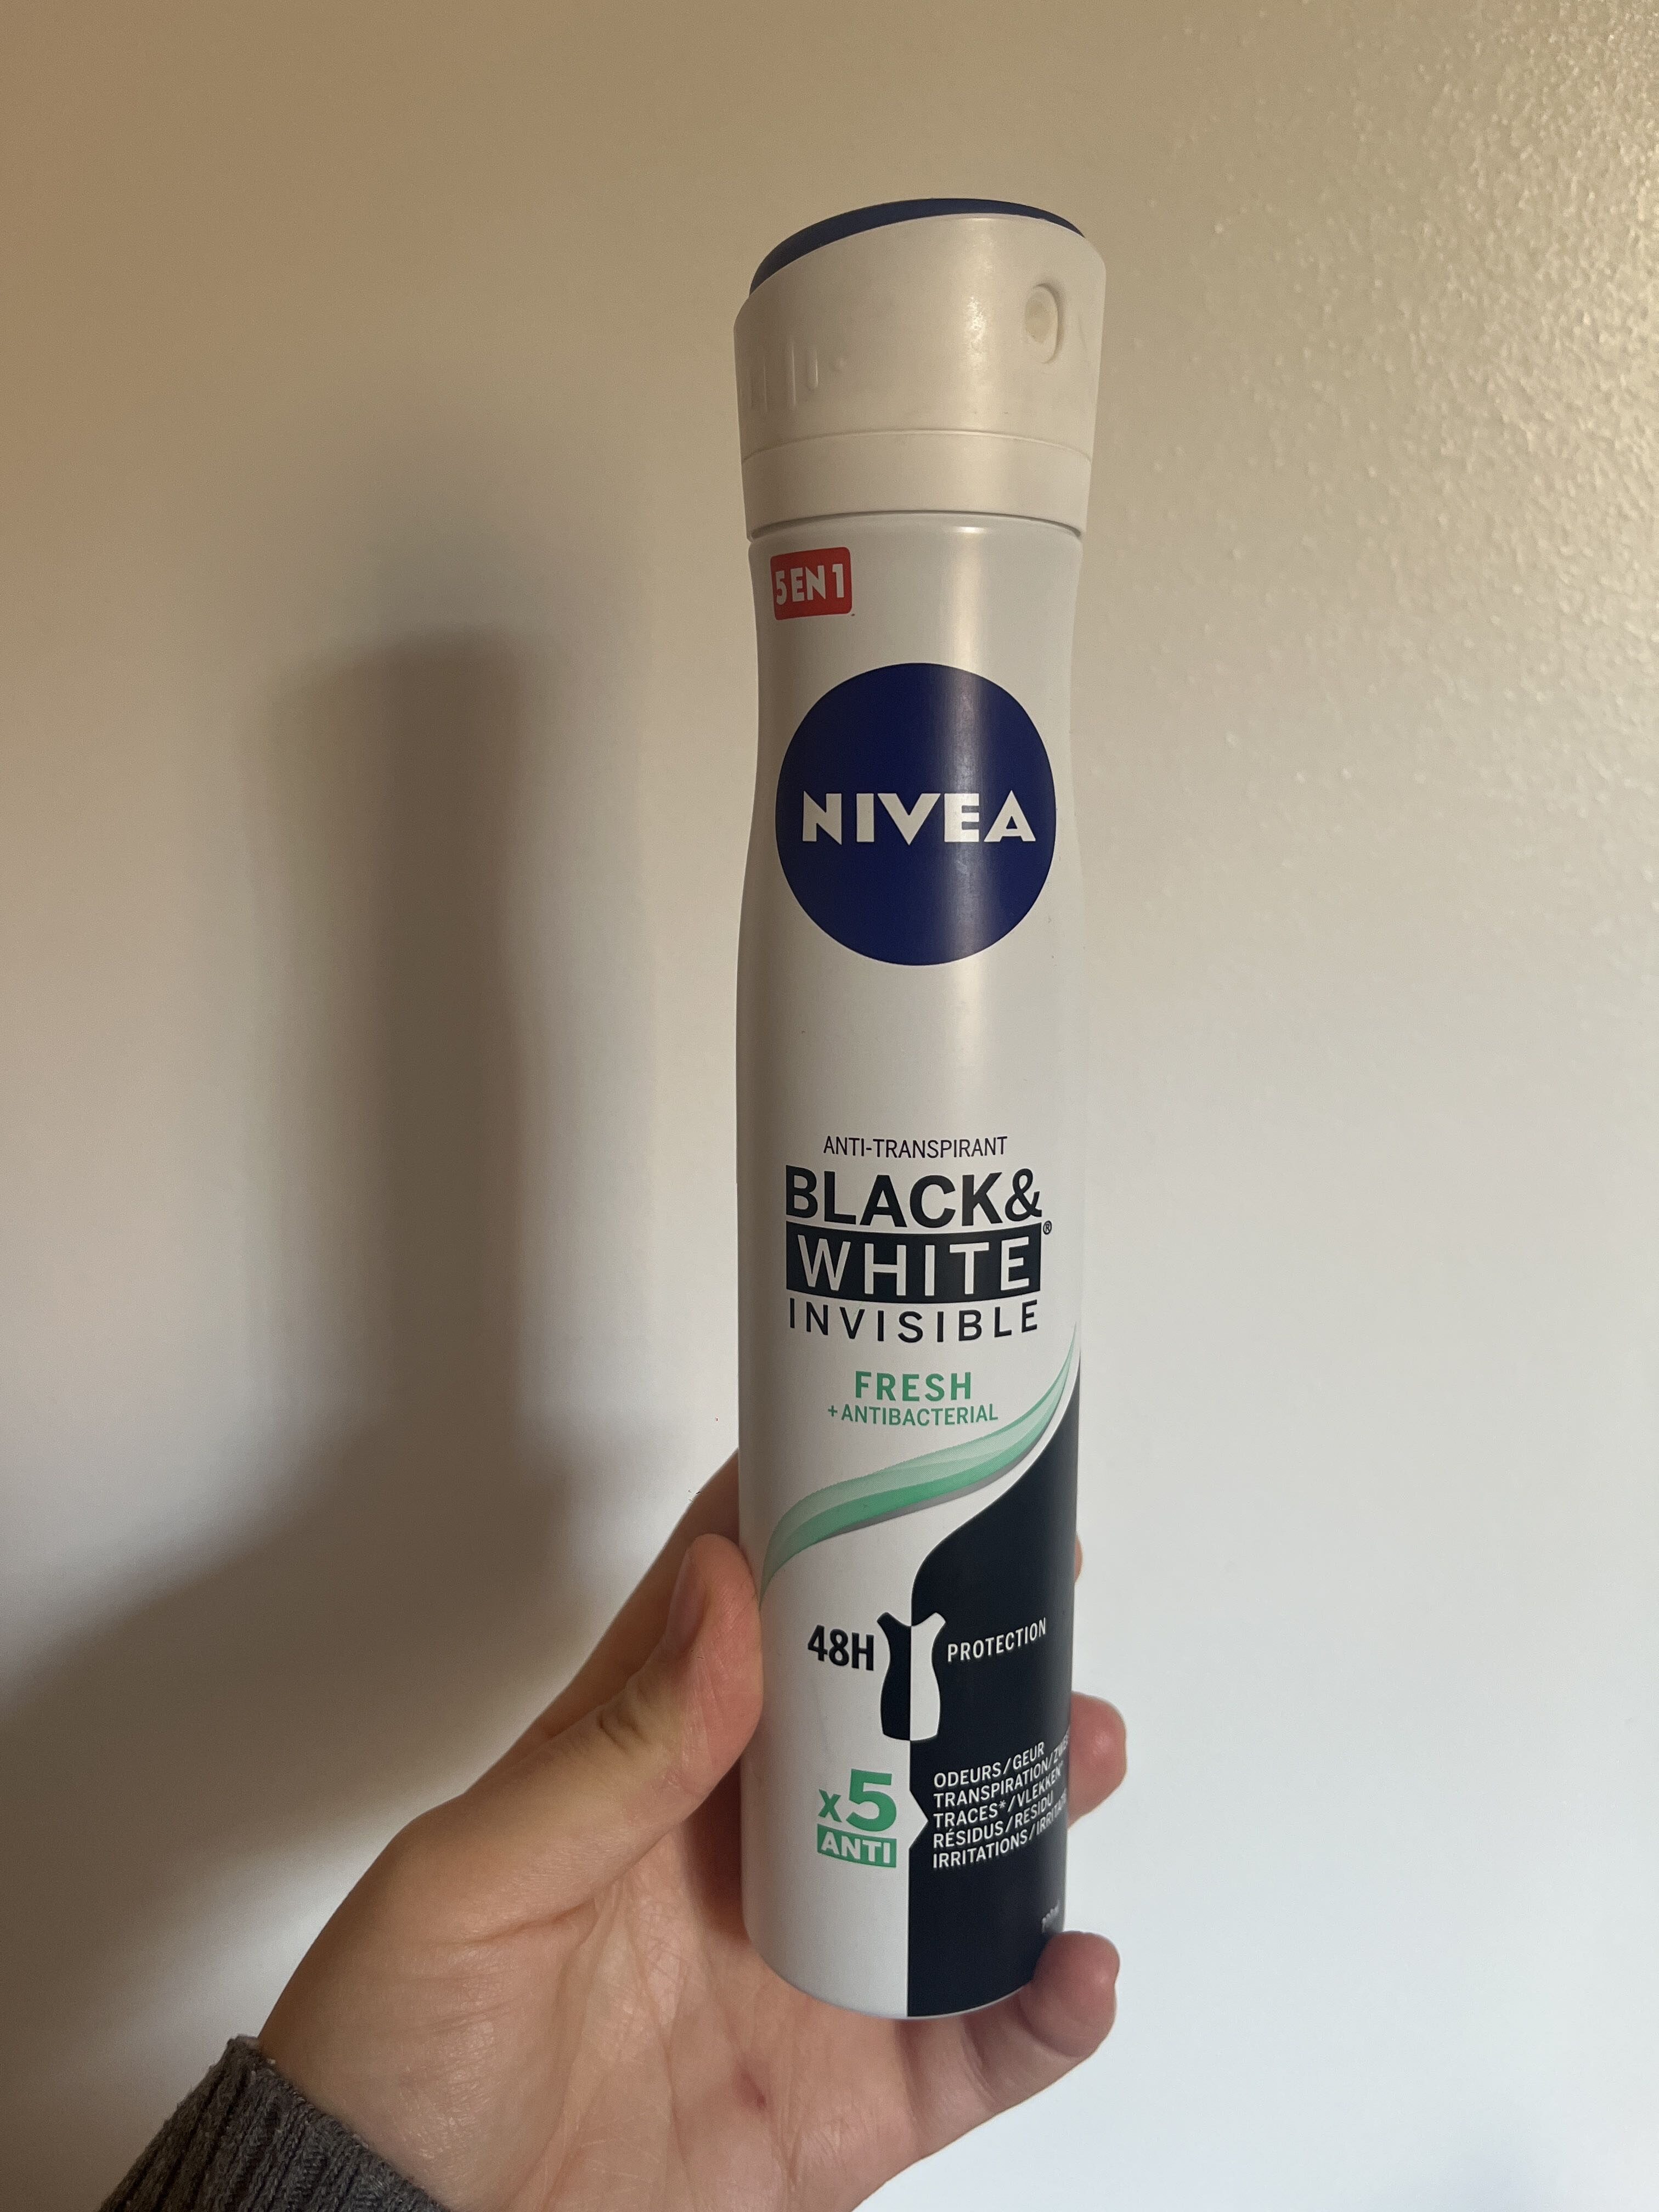 Déodorant Nivea black & white invisible - Produto - fr